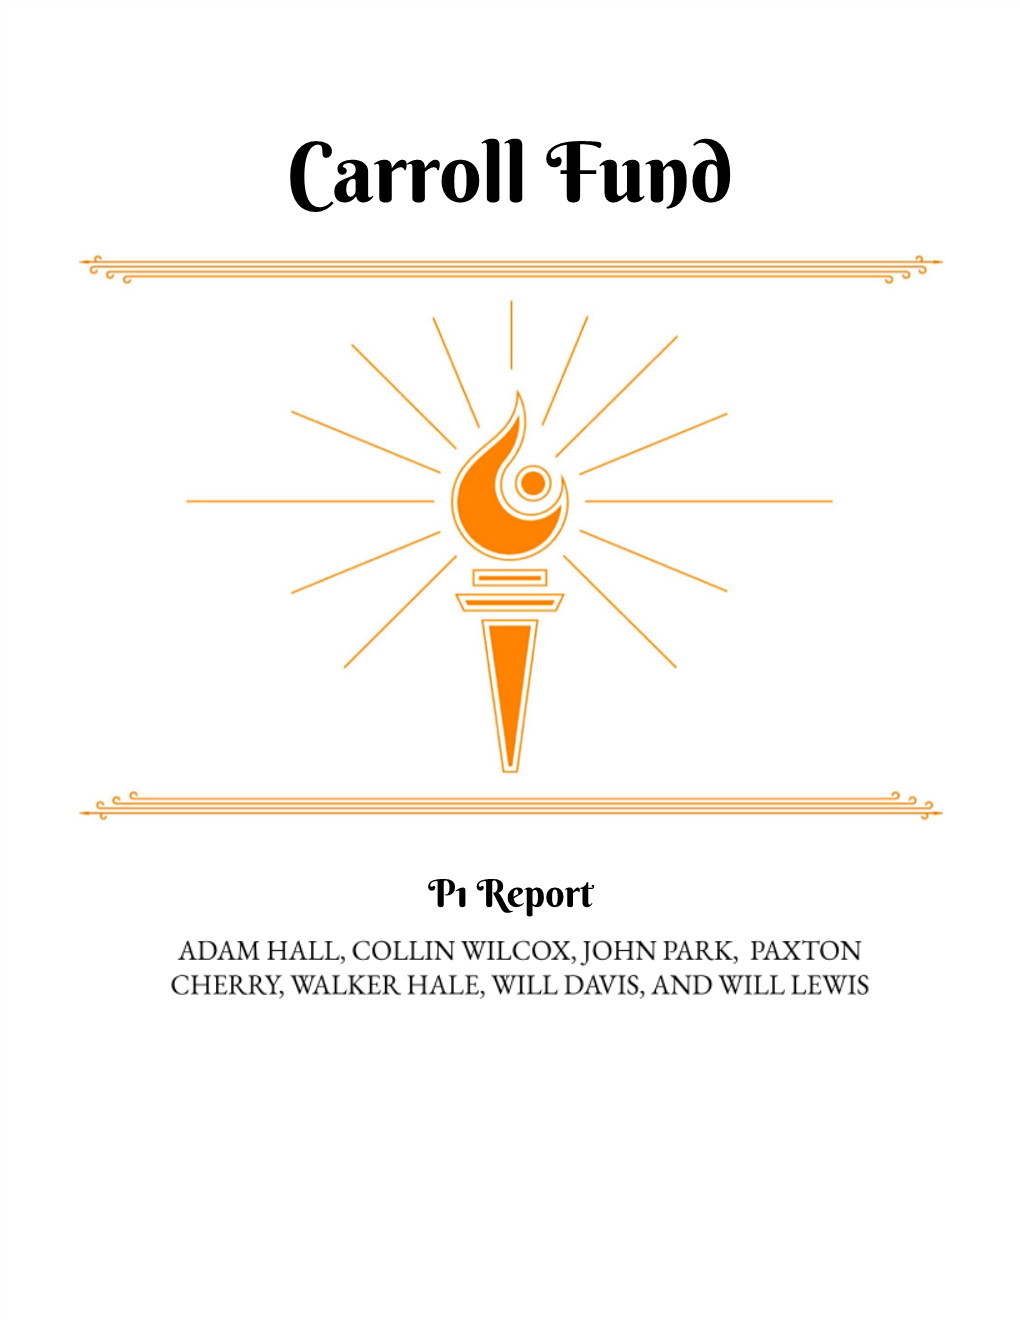 Carroll Fund